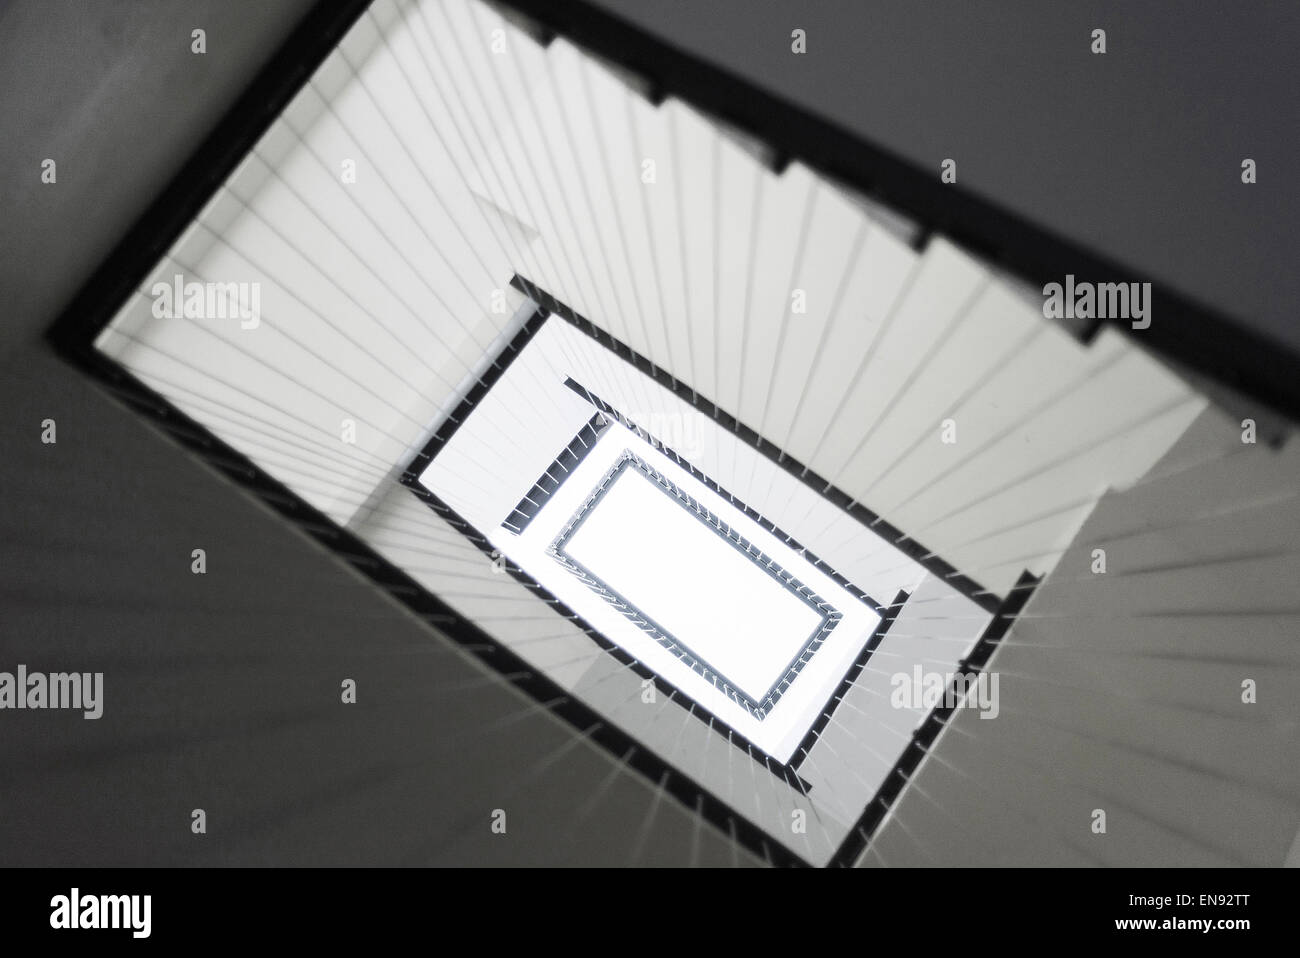 La arquitectura moderna estilo minimalista escalera interior composición abstracta Foto de stock